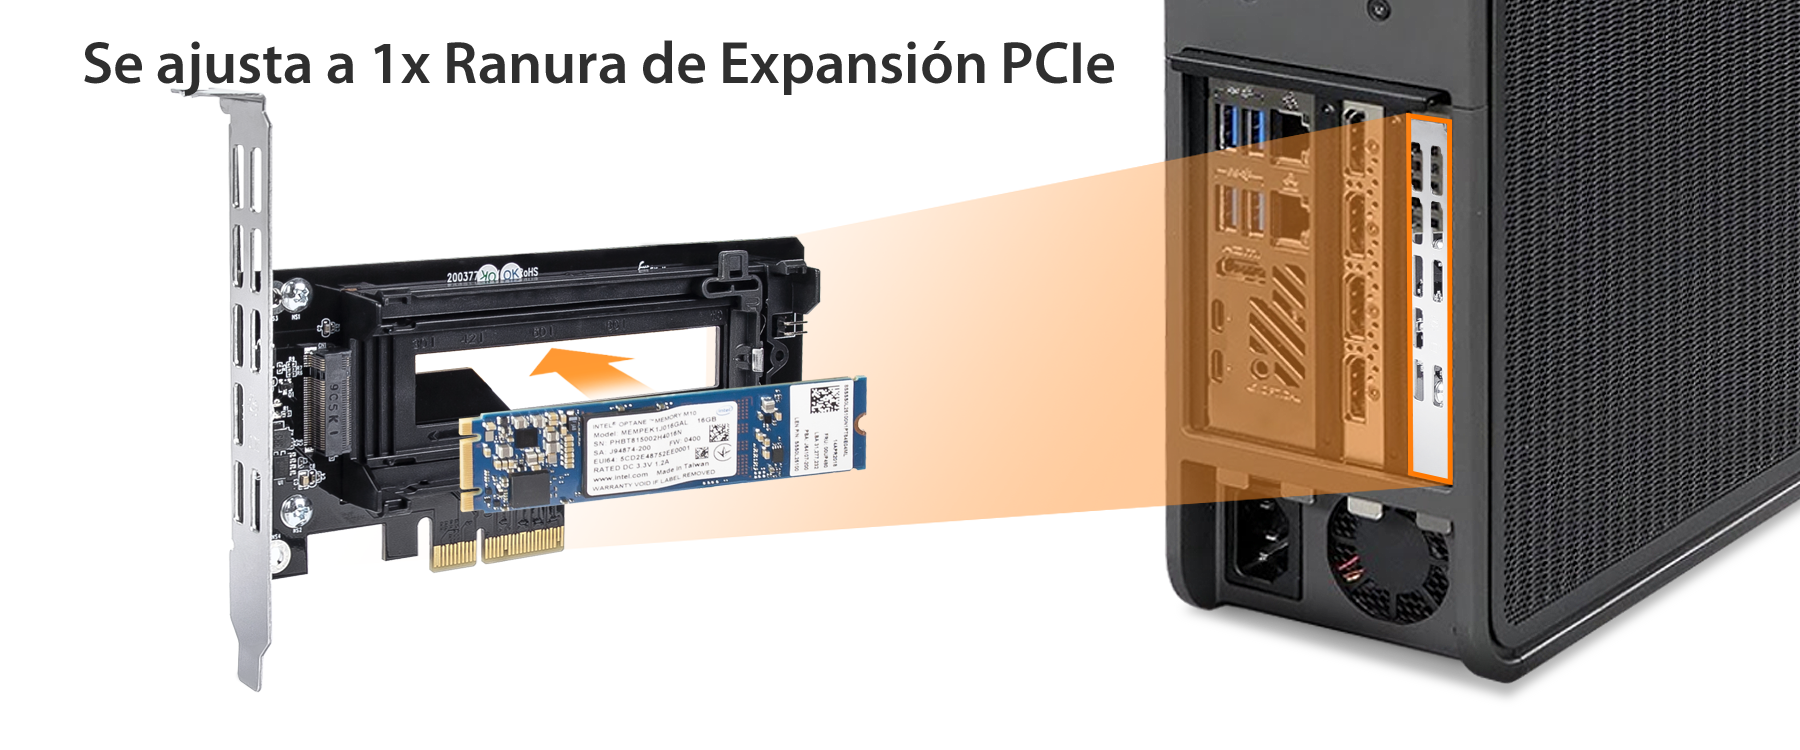 La foto muestra la compatibilidad con una ranura de expansión PCIe